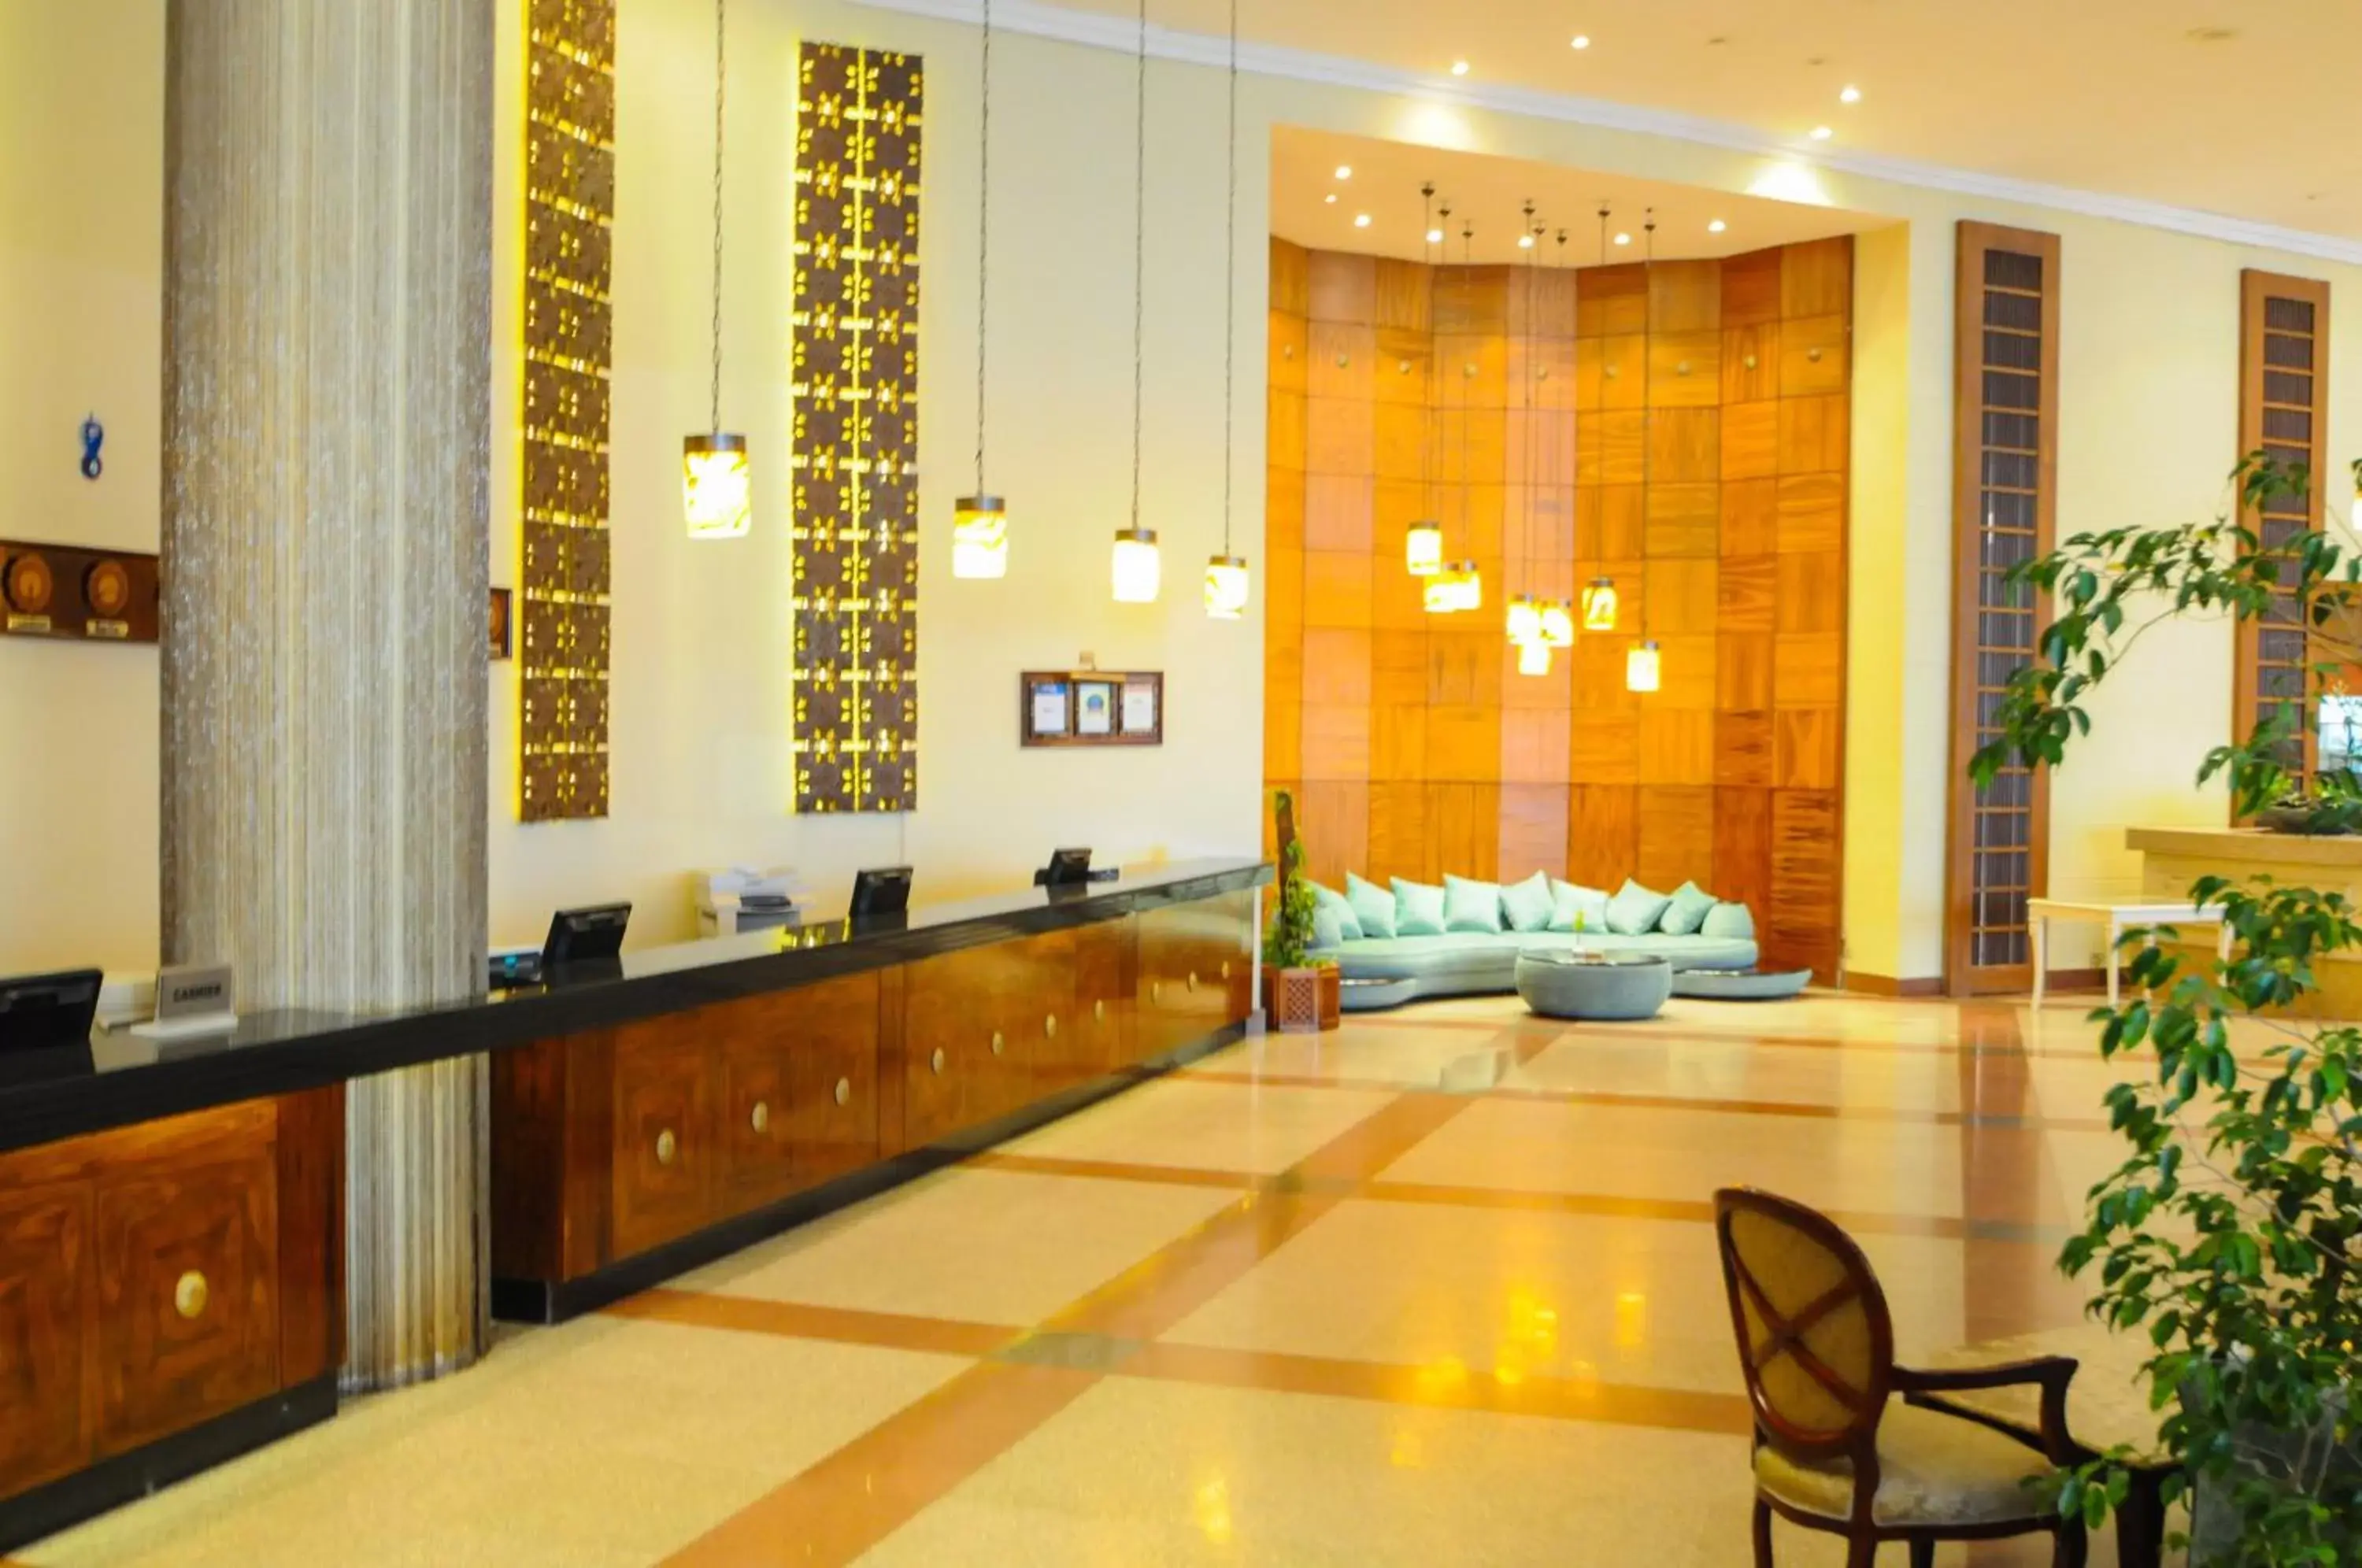 Lobby or reception, Lobby/Reception in Pyramisa Beach Resort Sharm El Sheikh